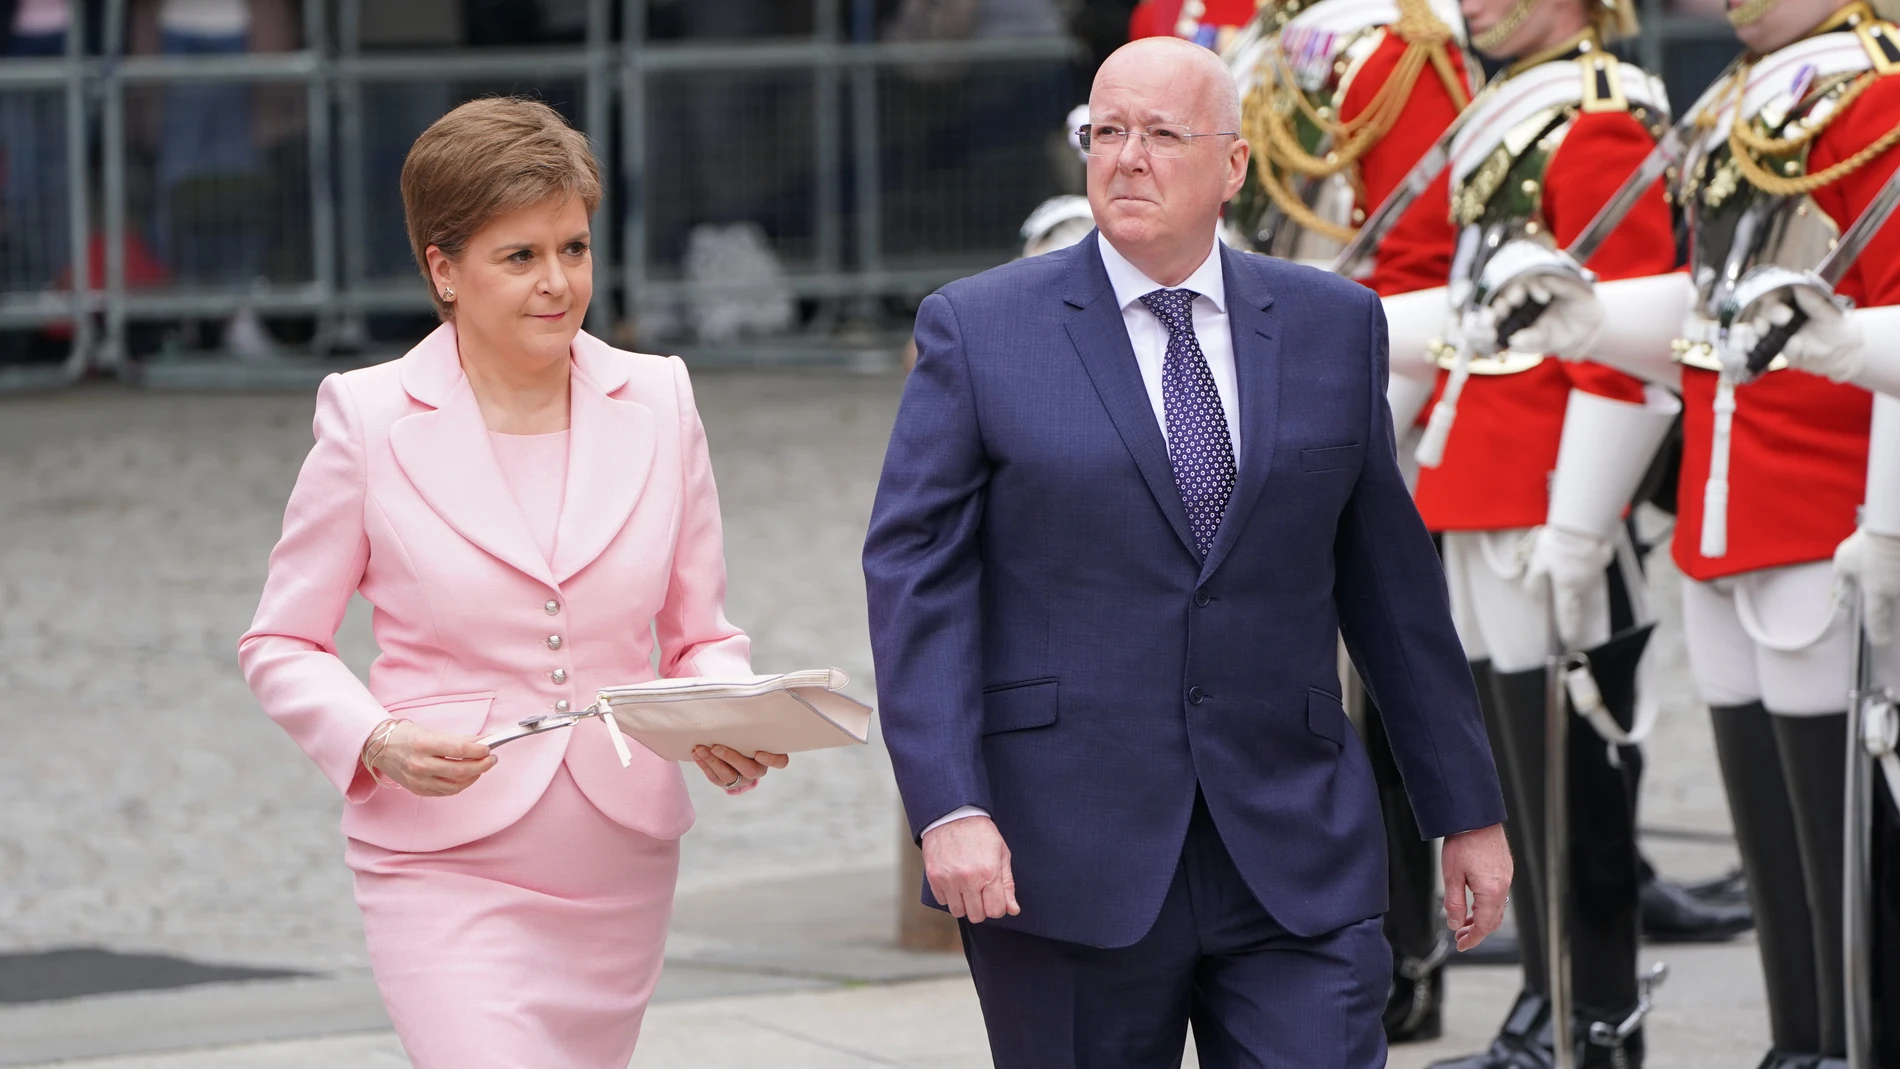 R.Unido.- Detenido el marido de Nicola Sturgeon en una investigación sobre las finanzas del SNP